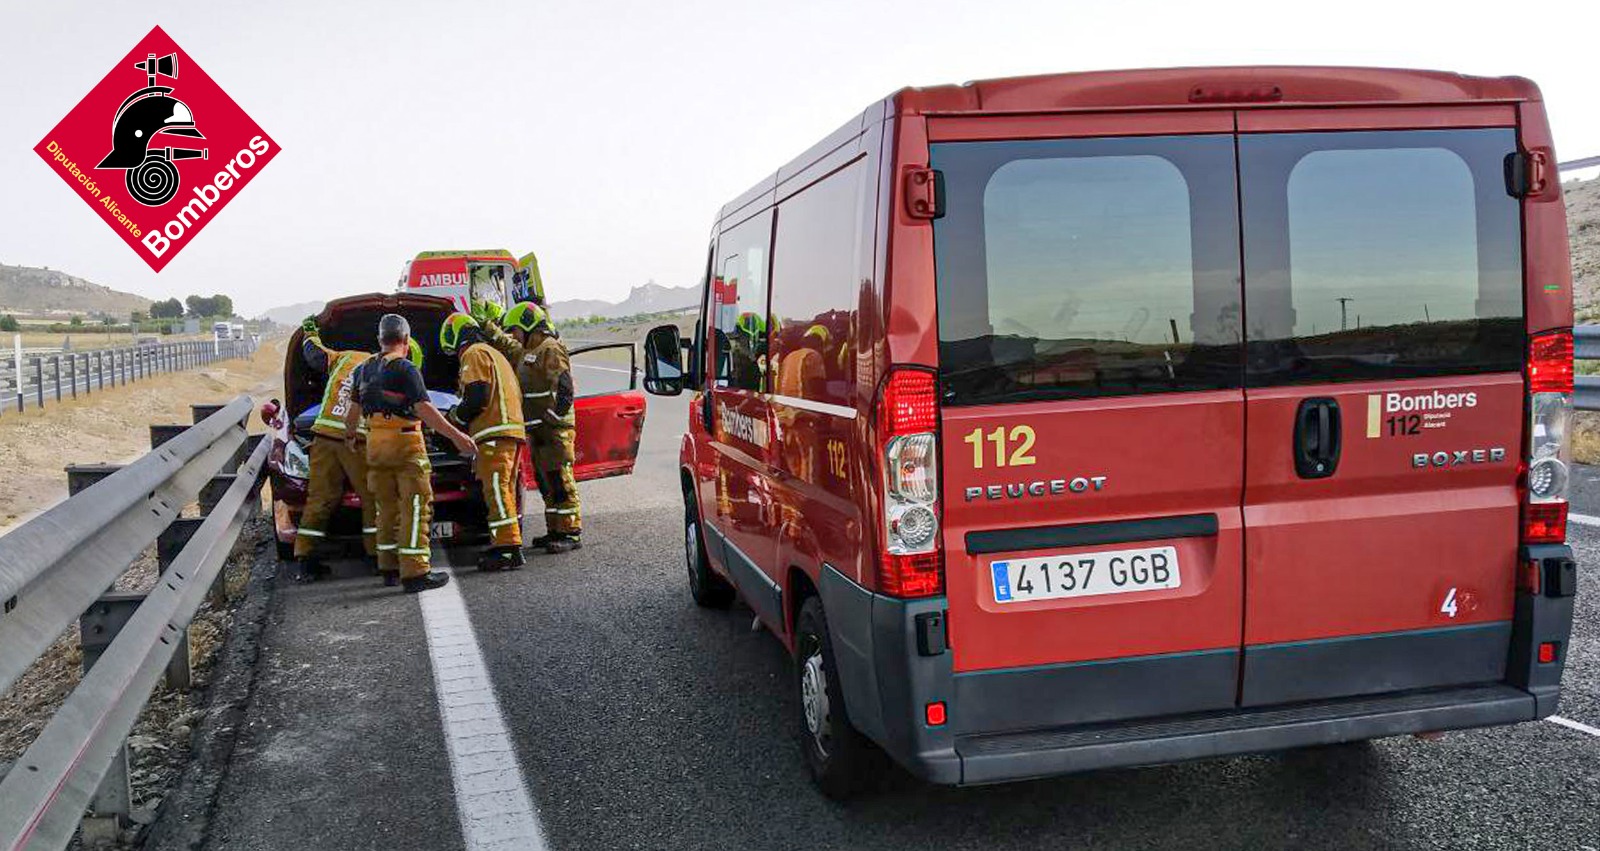 Un herido tras colisionar un camión y un turismo en la A-31 en Villena